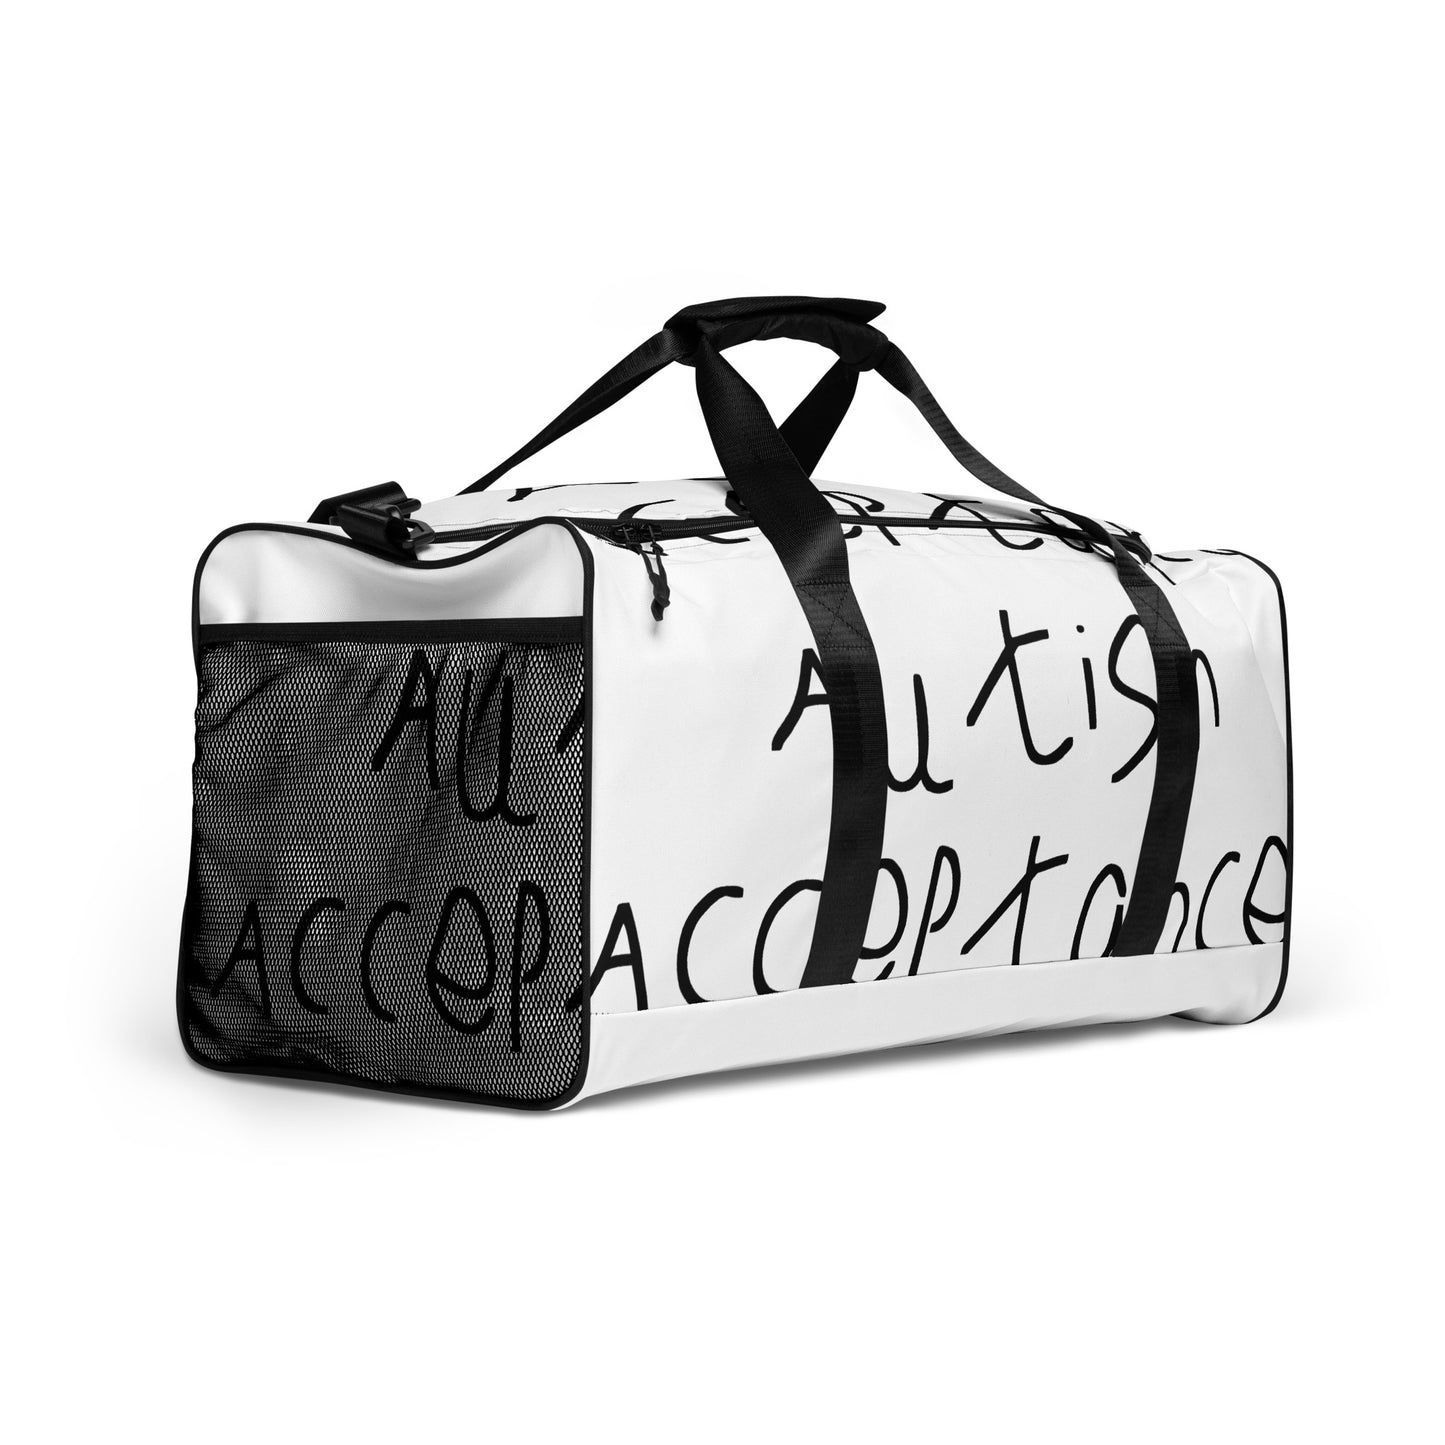 Autism Acceptance Duffle Bag